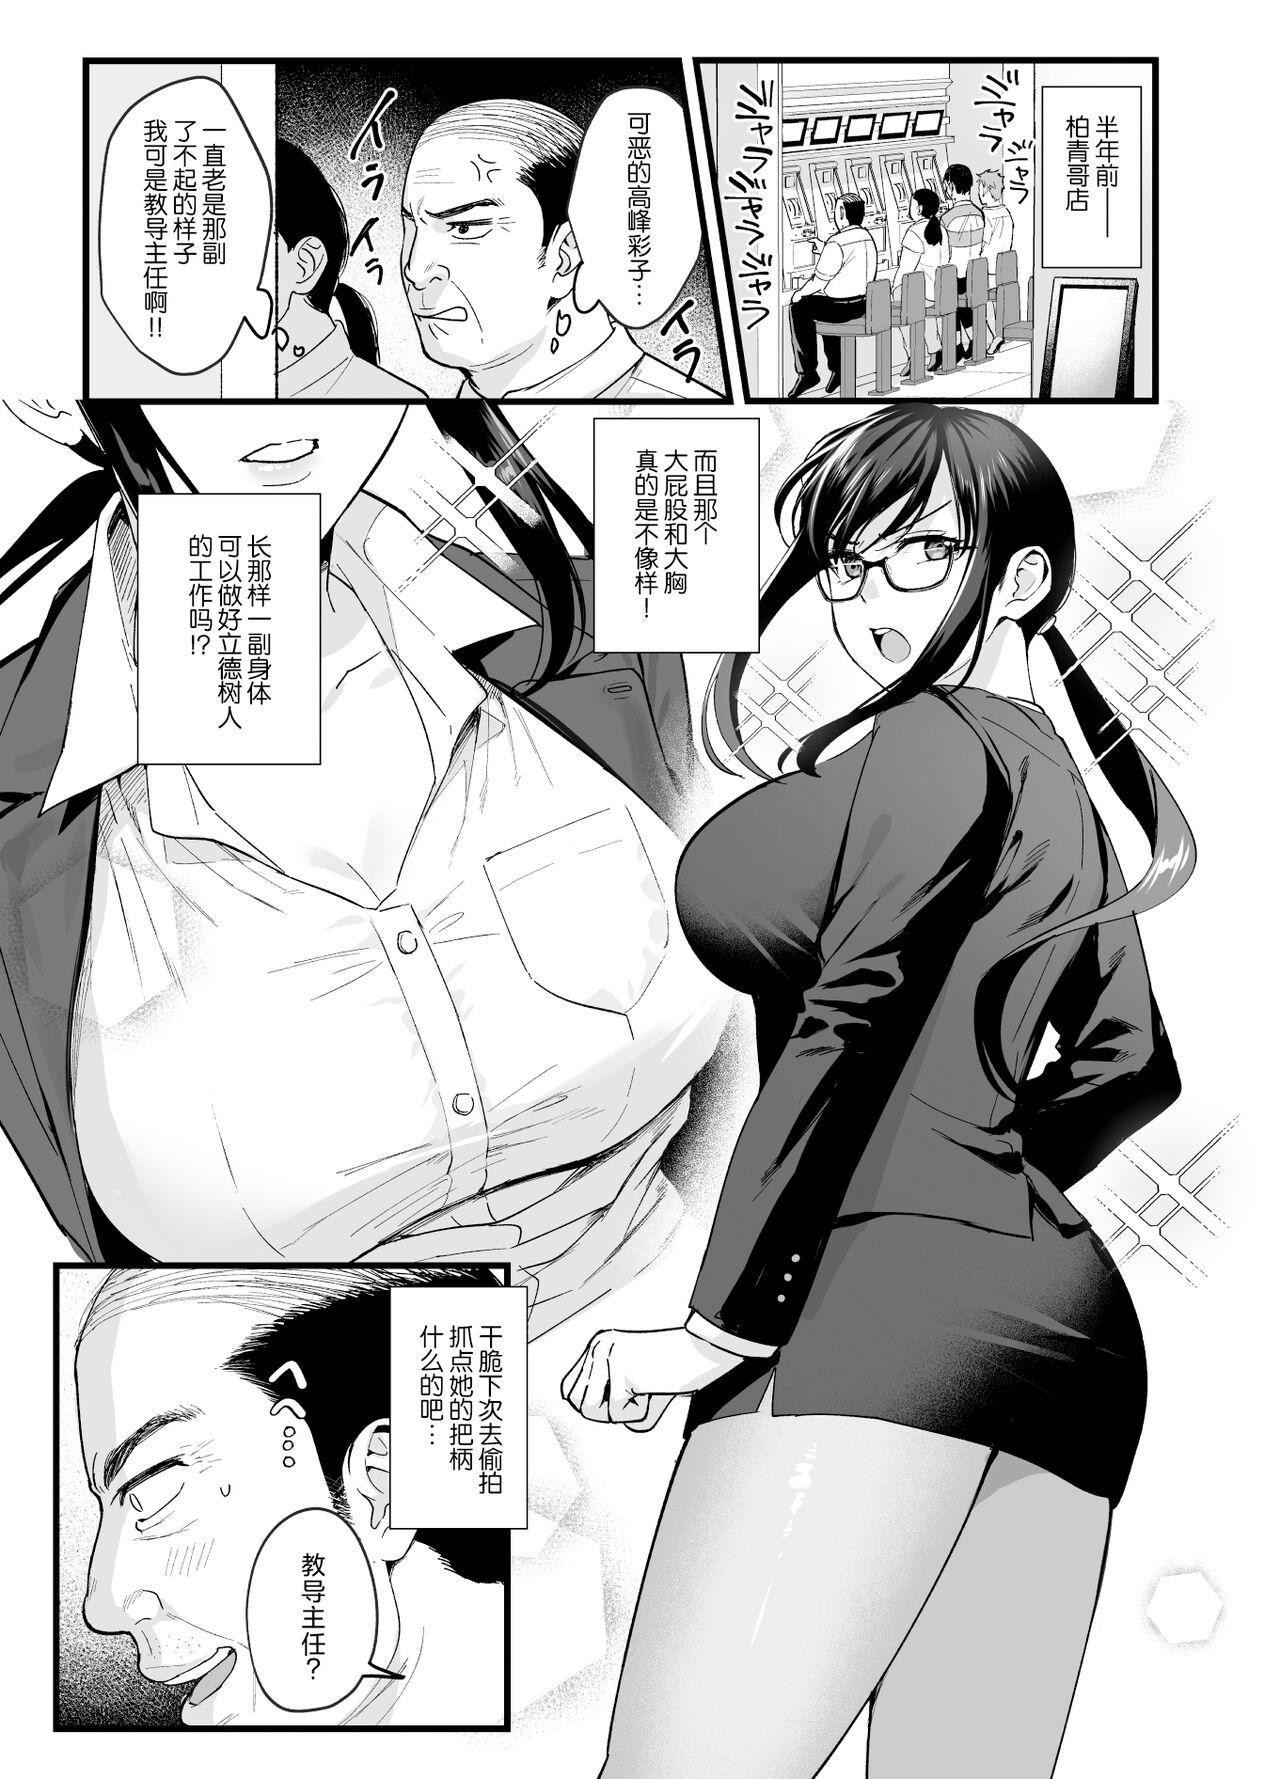 Nude Toshoshitsu no Kanojo 6 - Original Free Blow Job Porn - Page 2